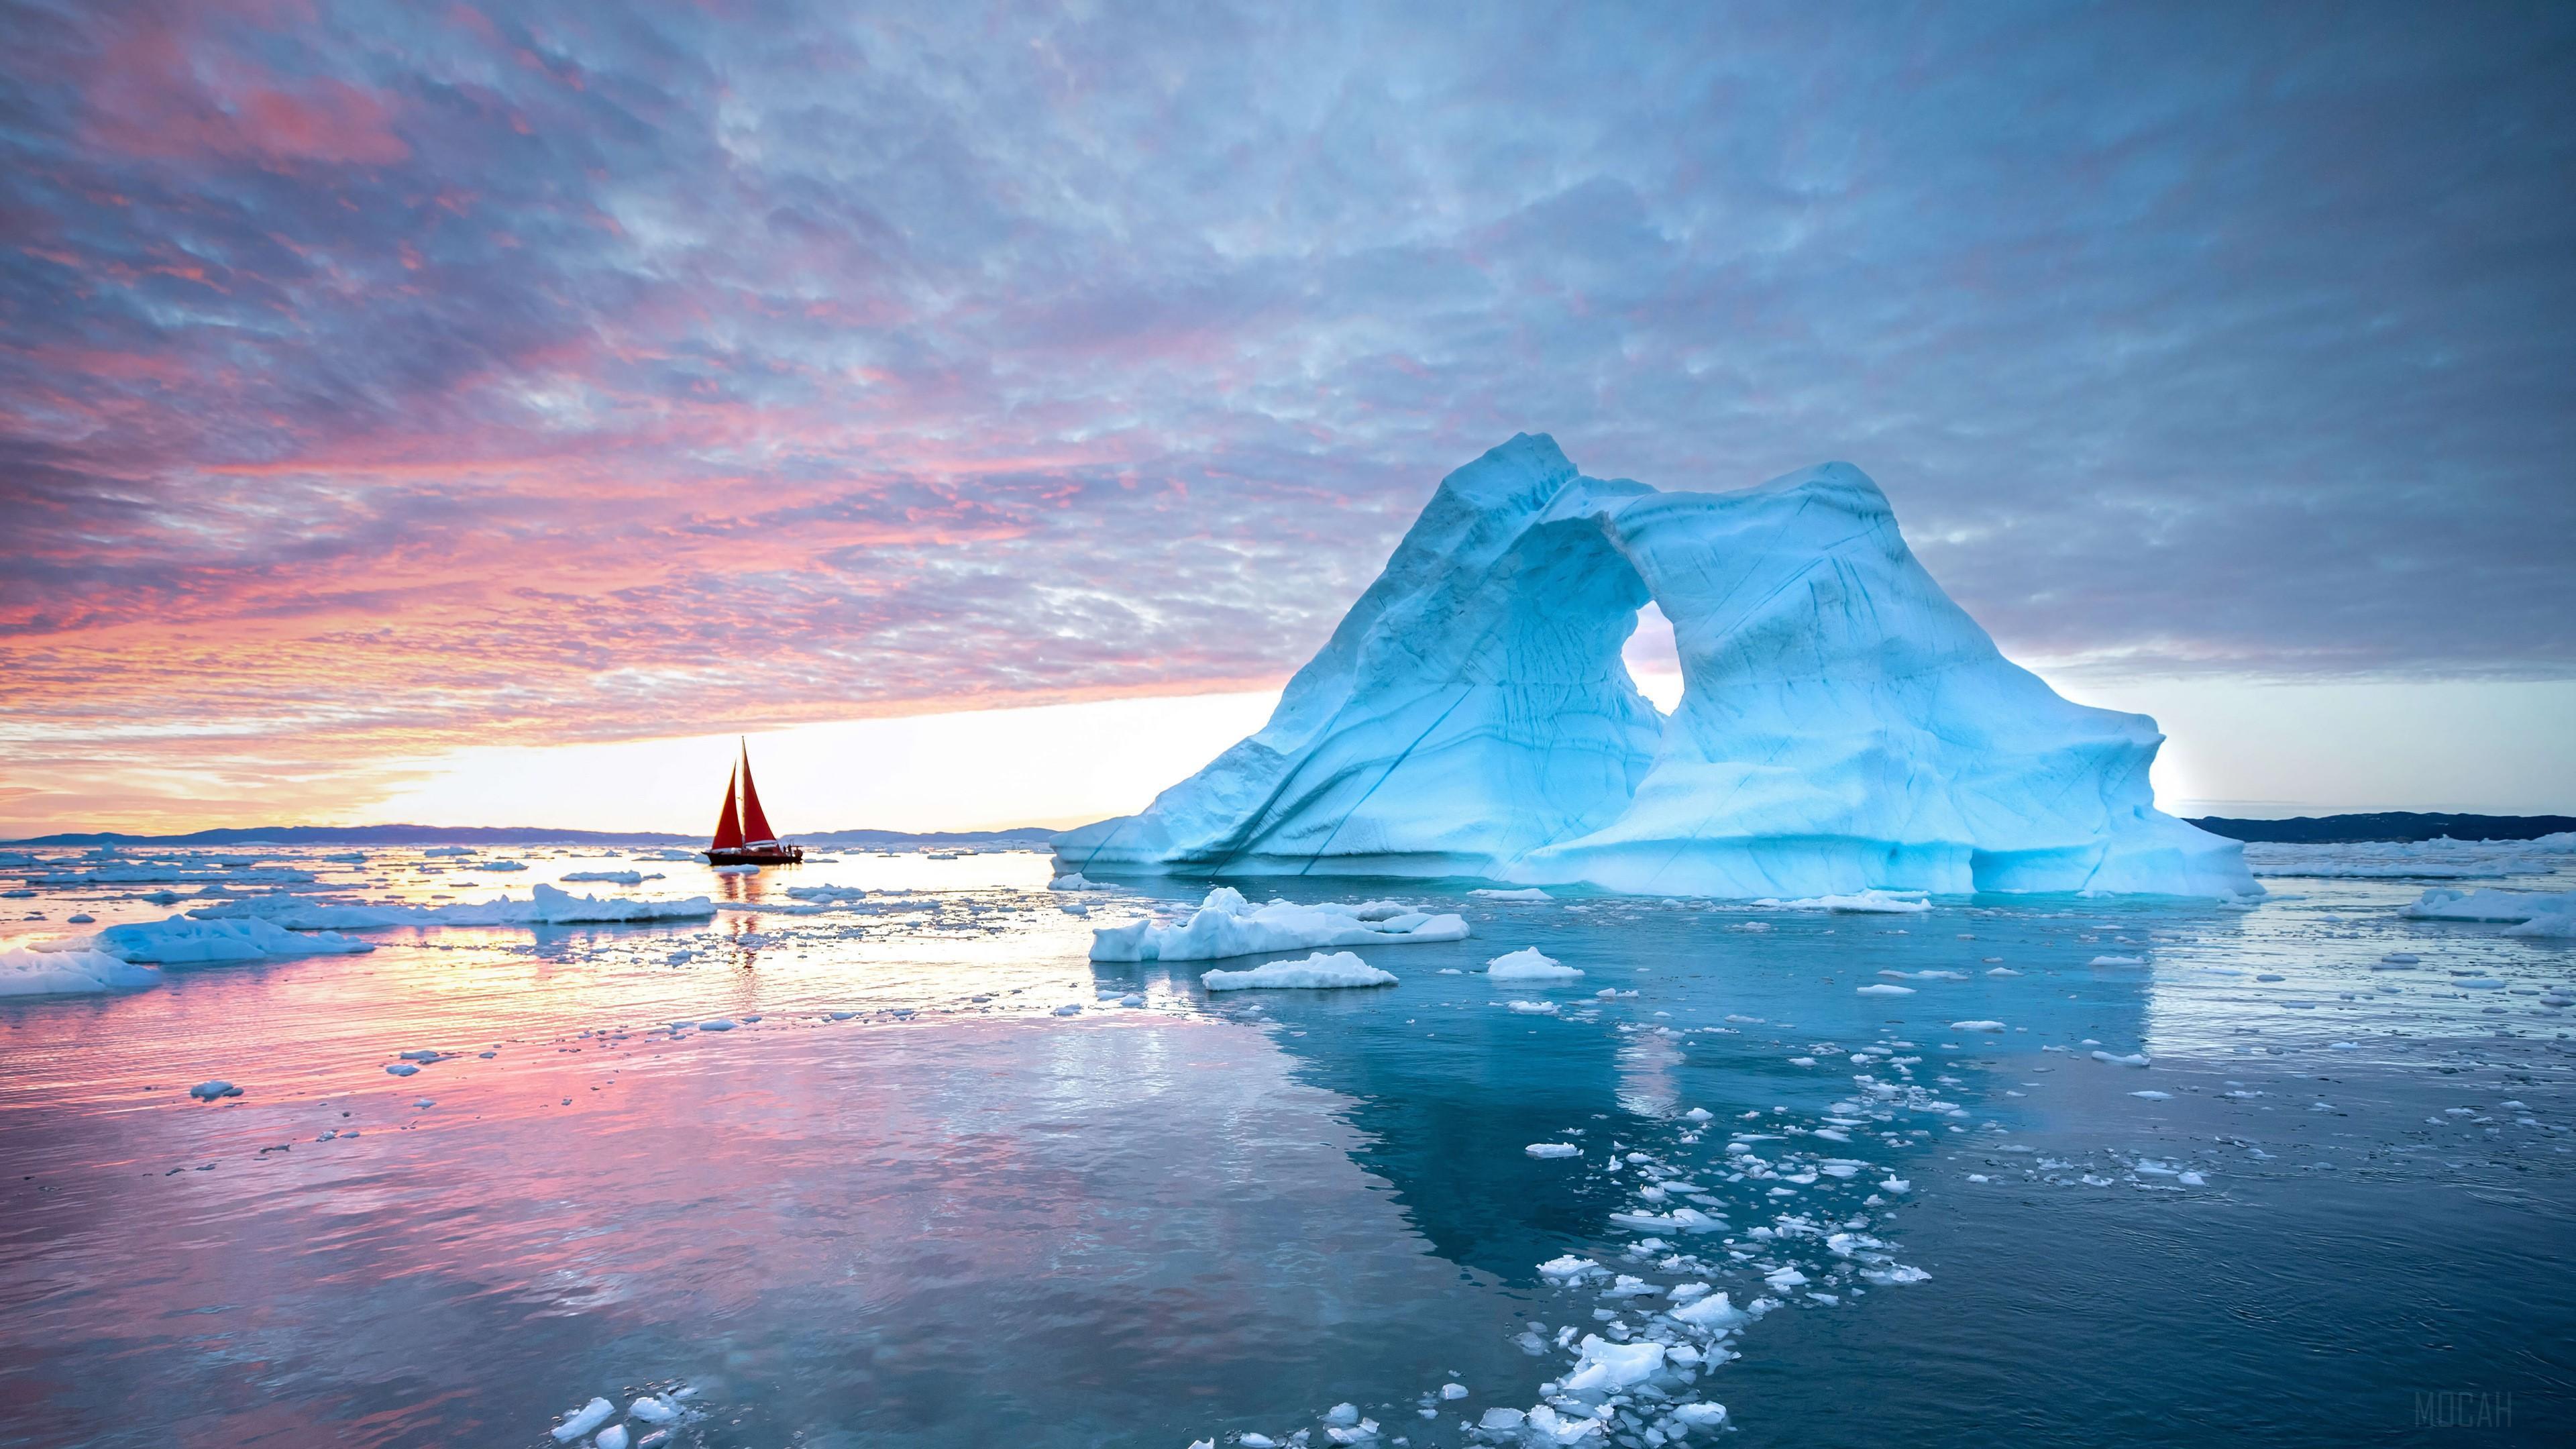 HD wallpaper, Ocean, Scenery 4K, Iceberg, Sunset